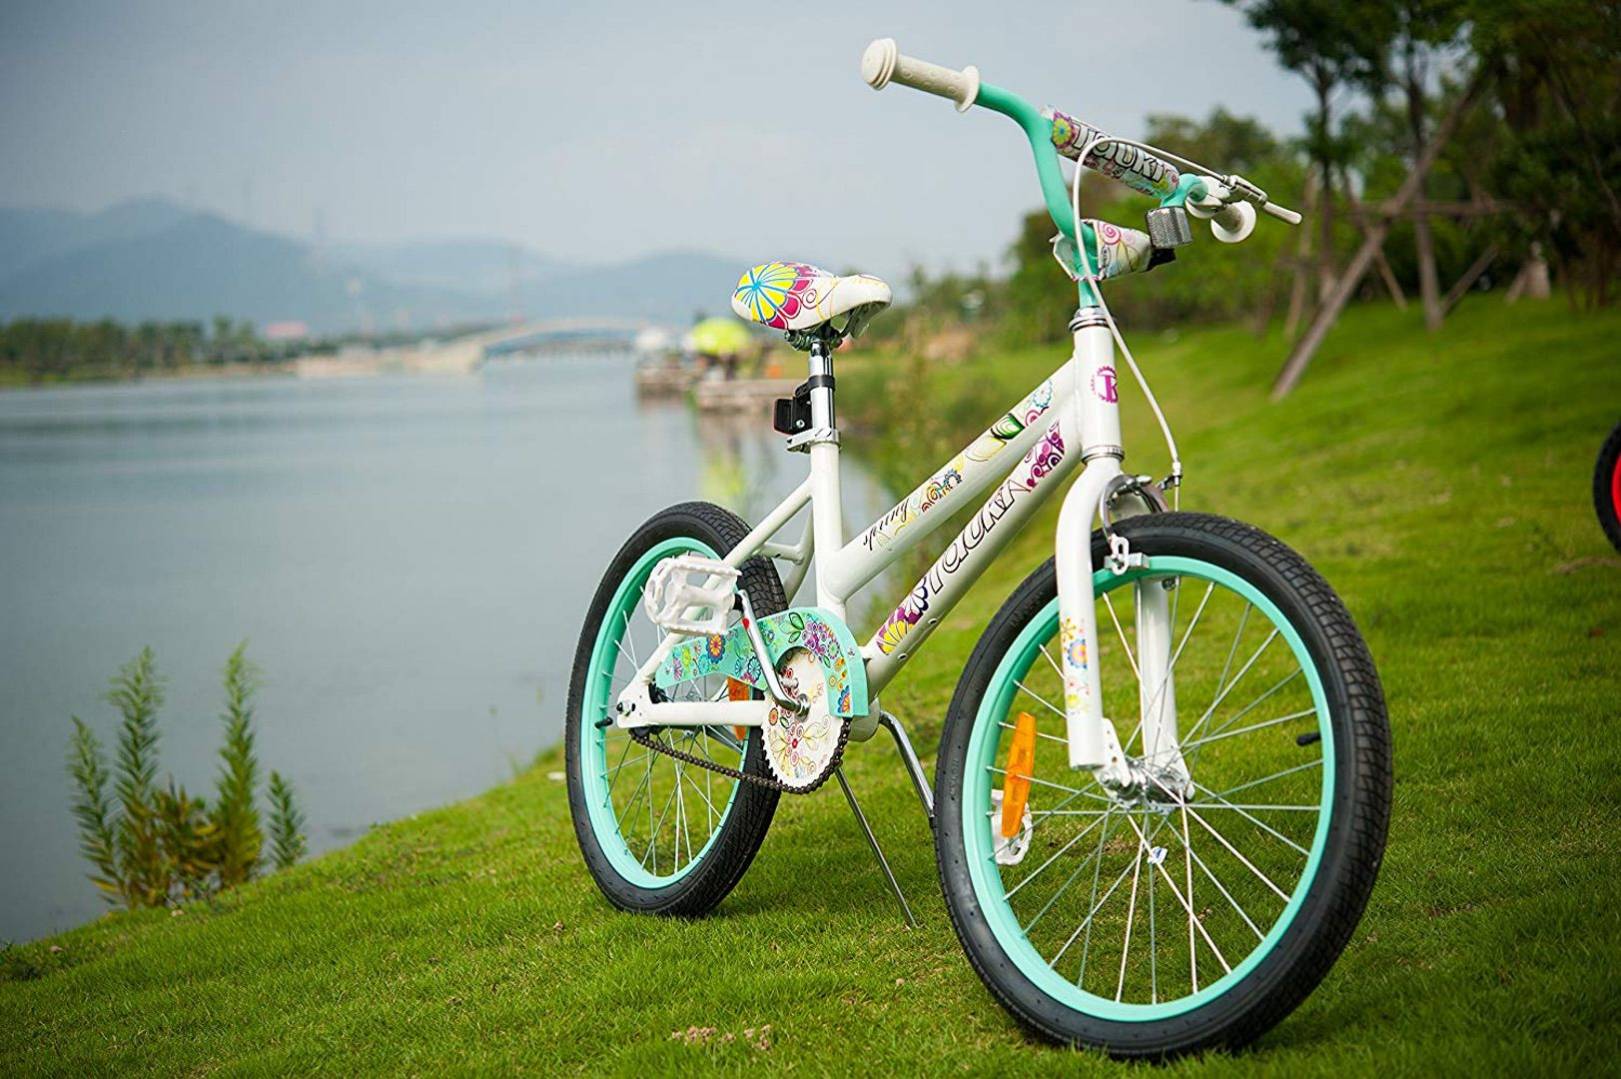 tauki balance bike